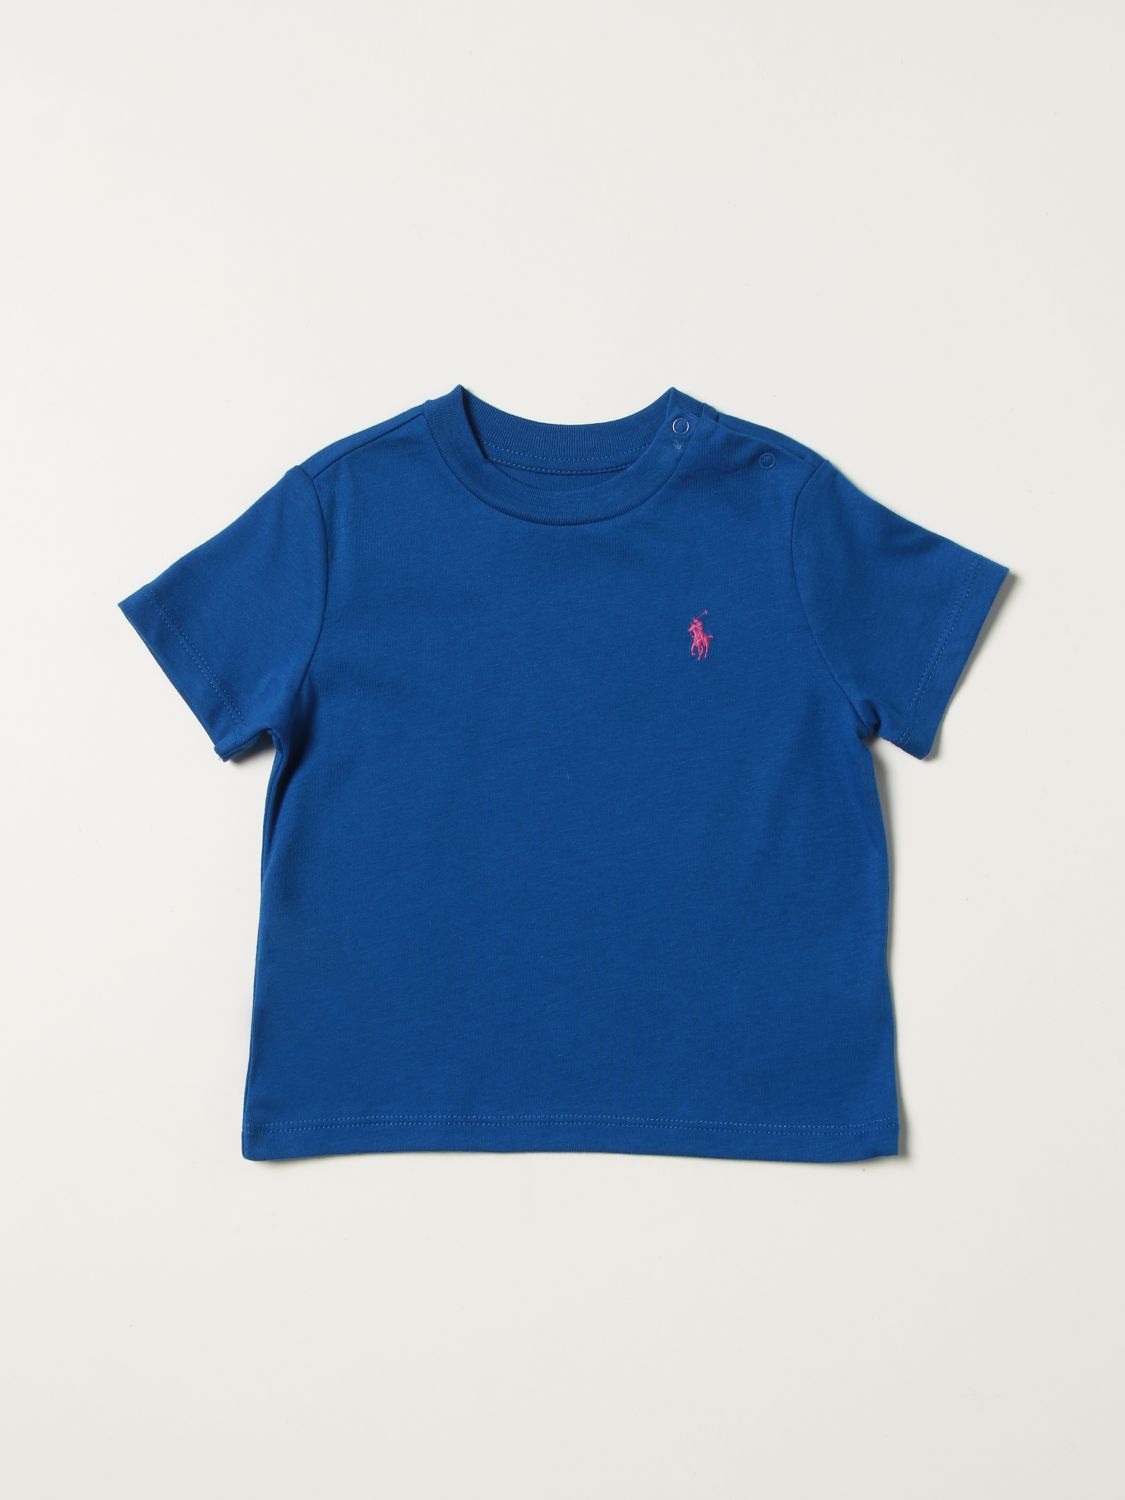 T恤 Polo Ralph Lauren: Polo Ralph Laurent恤婴儿 皇家蓝 1